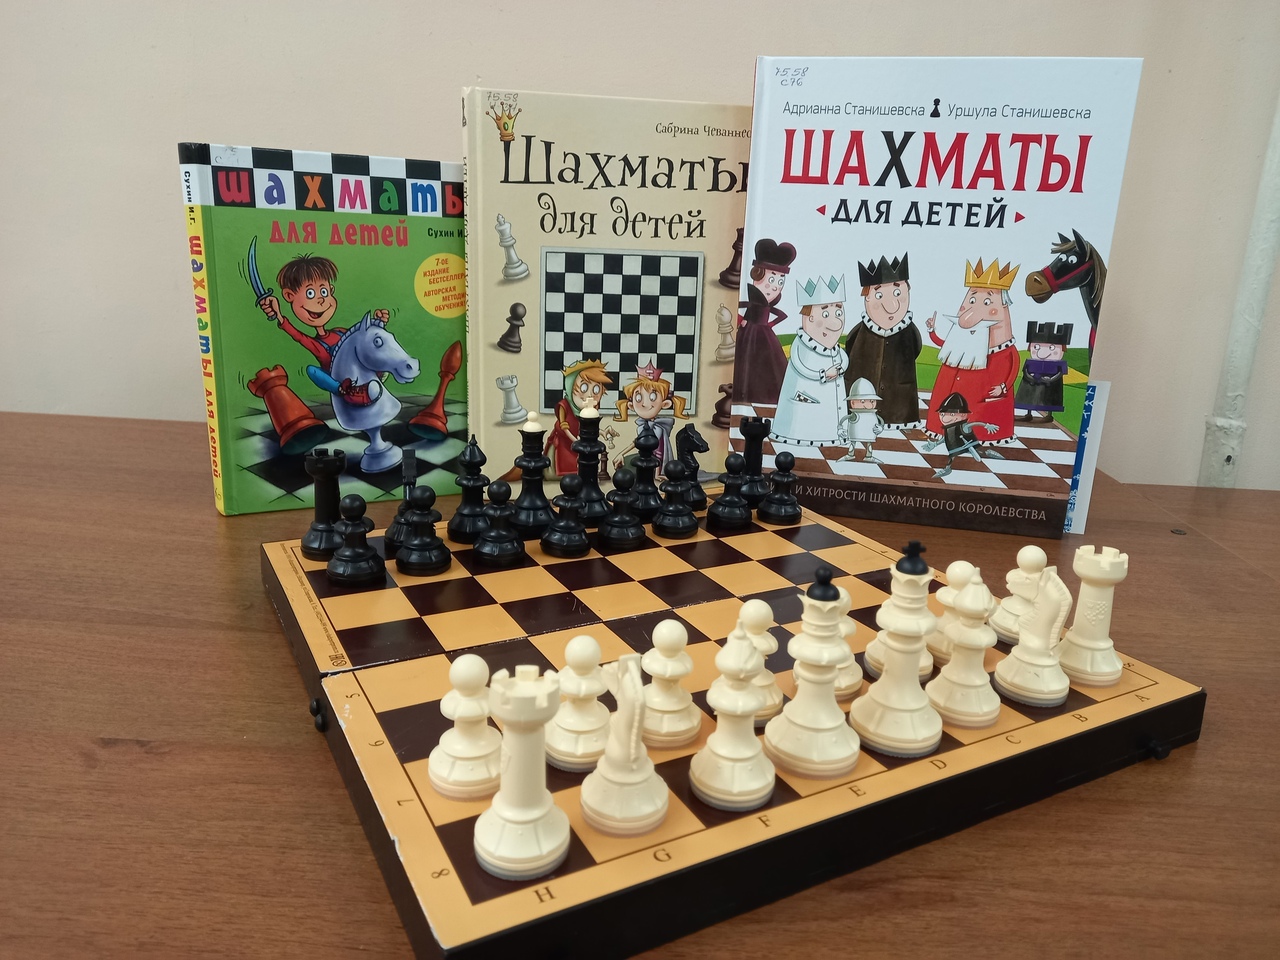 Шахматный клуб "Белая ладья".